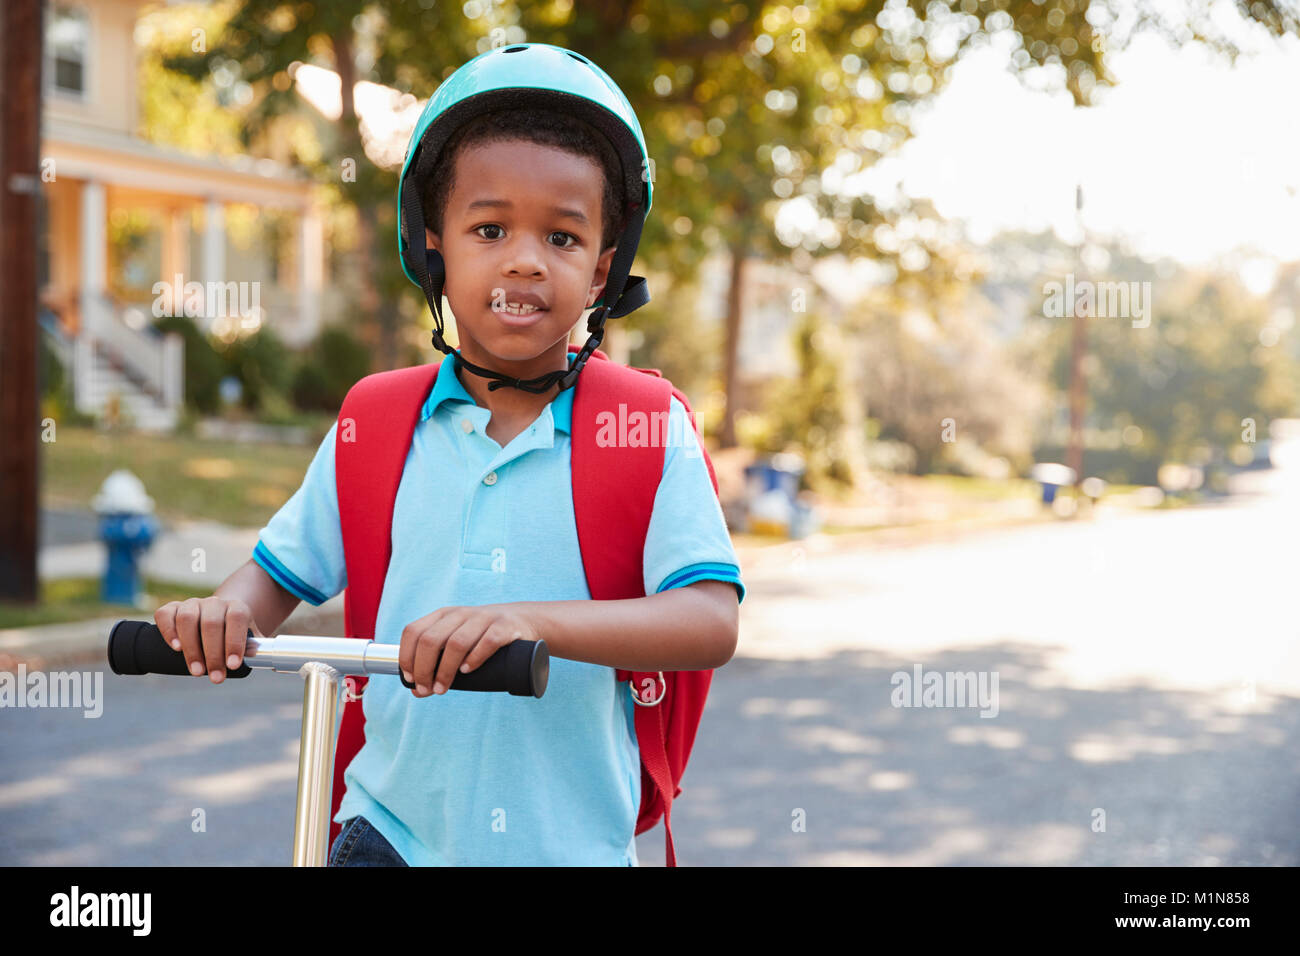 Young Boy Riding Scooter dans cette rue à l'école Banque D'Images